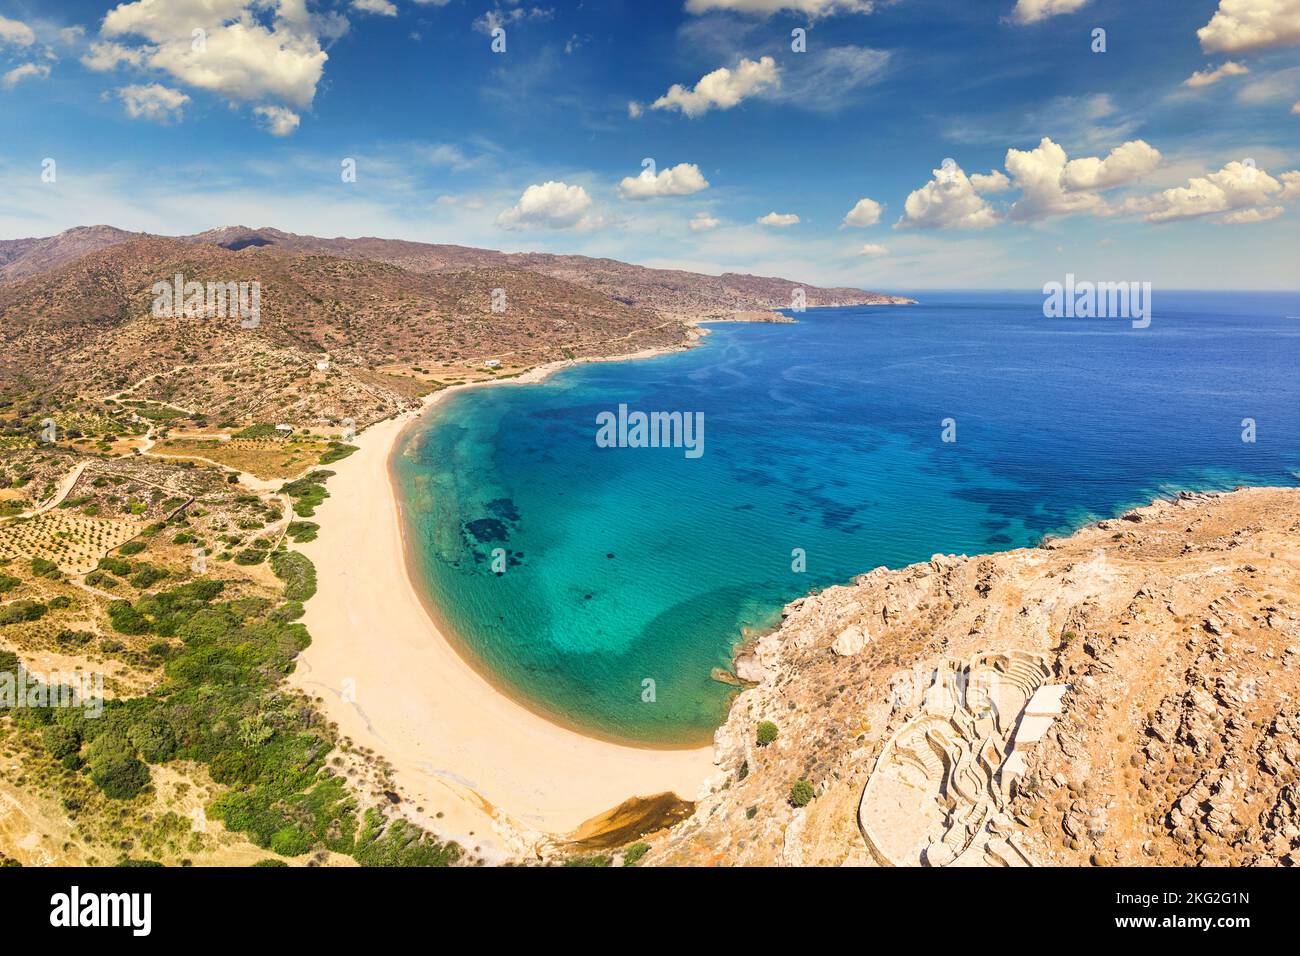 La plage de sable Kalamos dans l'île d'iOS, Grèce Banque D'Images